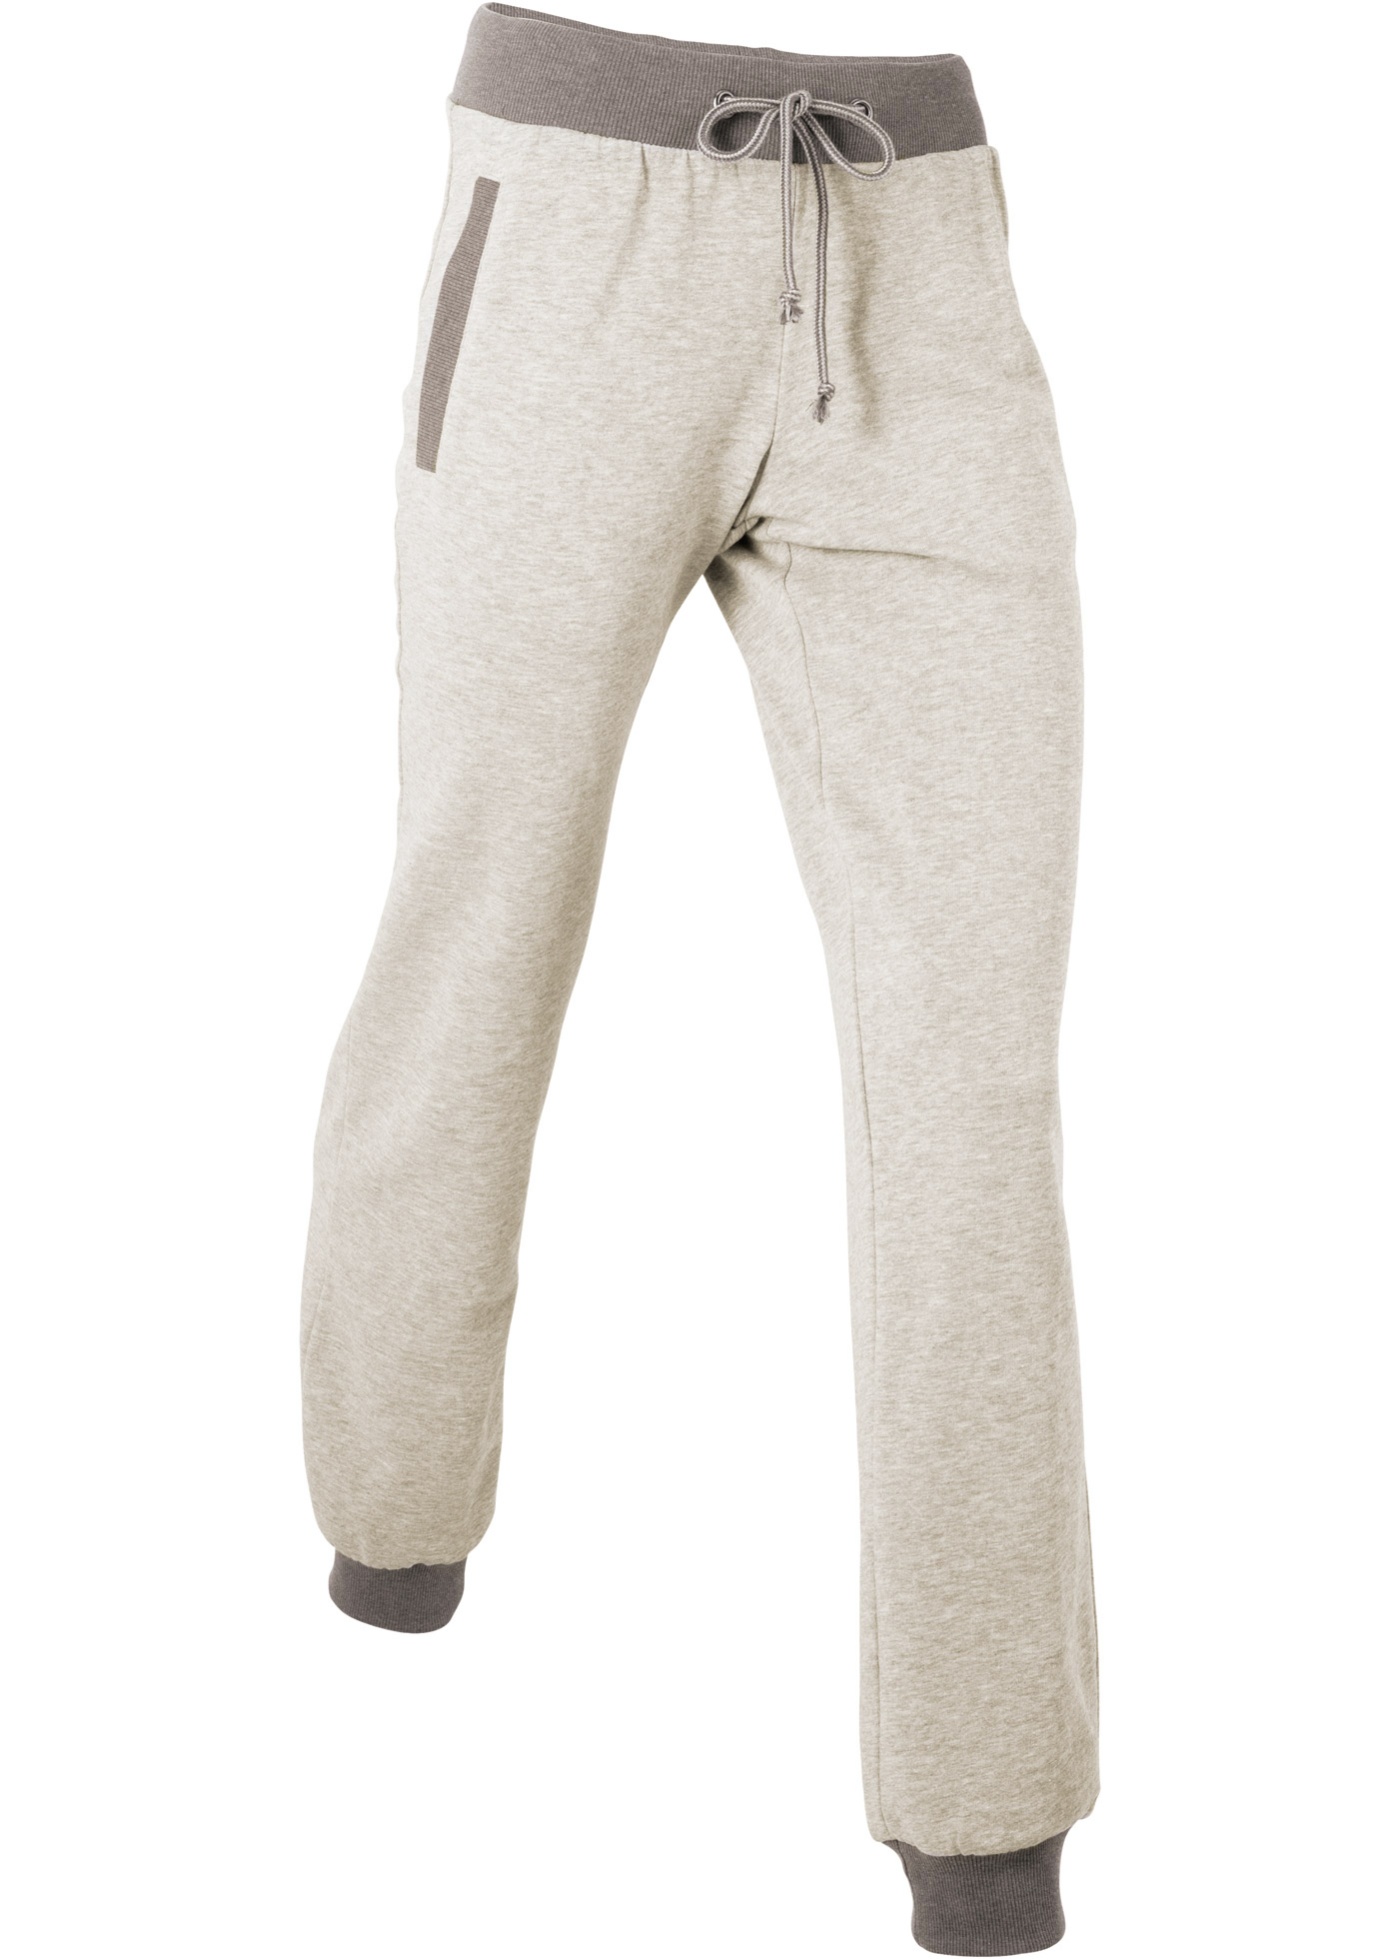 Pantalone da jogging lungo (Grigio) - bpc bonprix collection